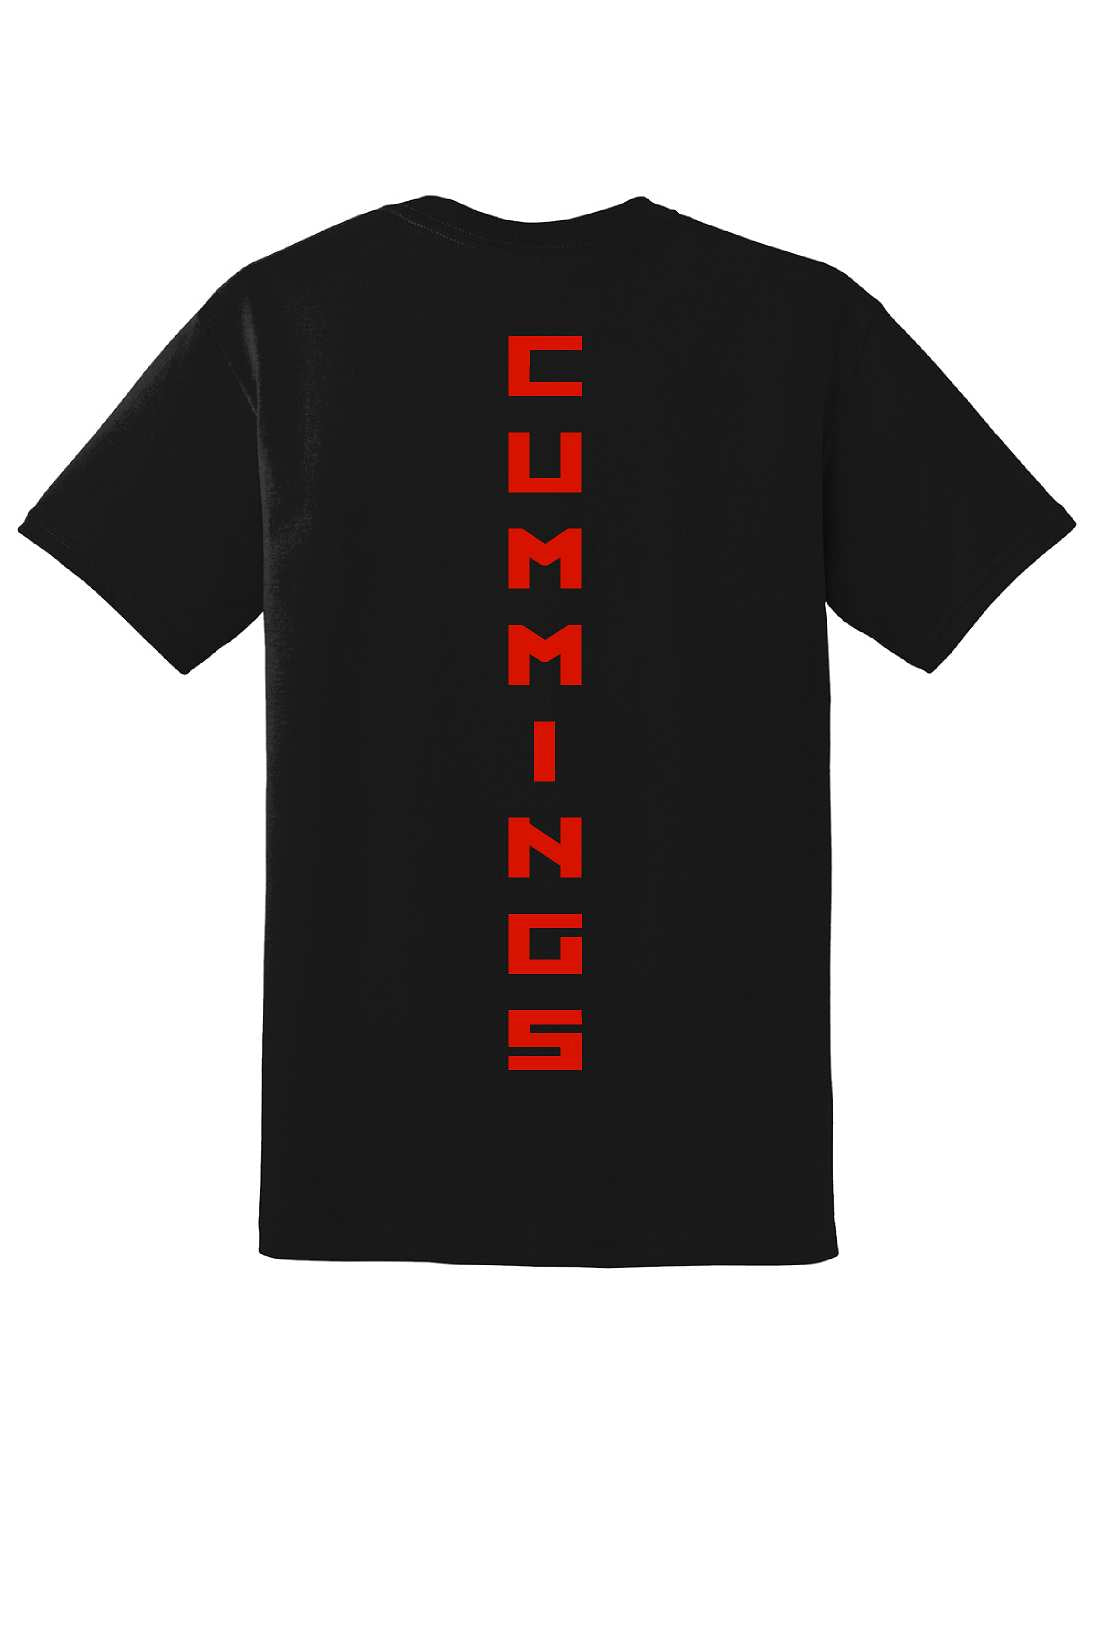 James Cummings tshirts, VE DT8000